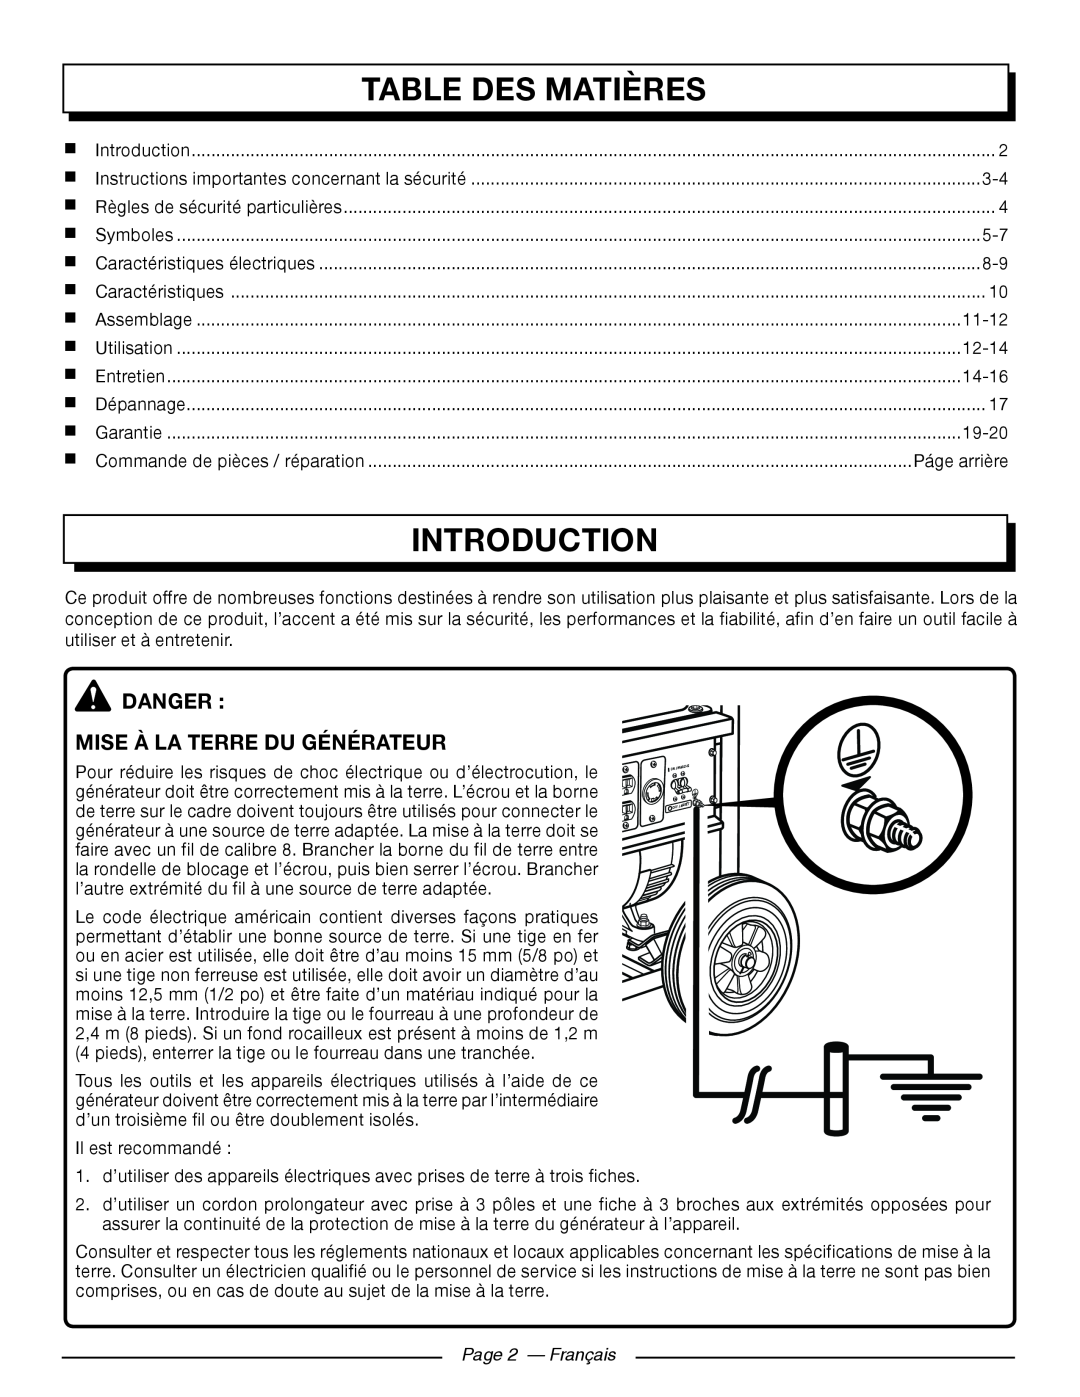 Homelite HG5000 Table Des Matières, Introduction, danger MISE À LA TERRE DU GÉNÉRATEUR, Page 2 — Français 